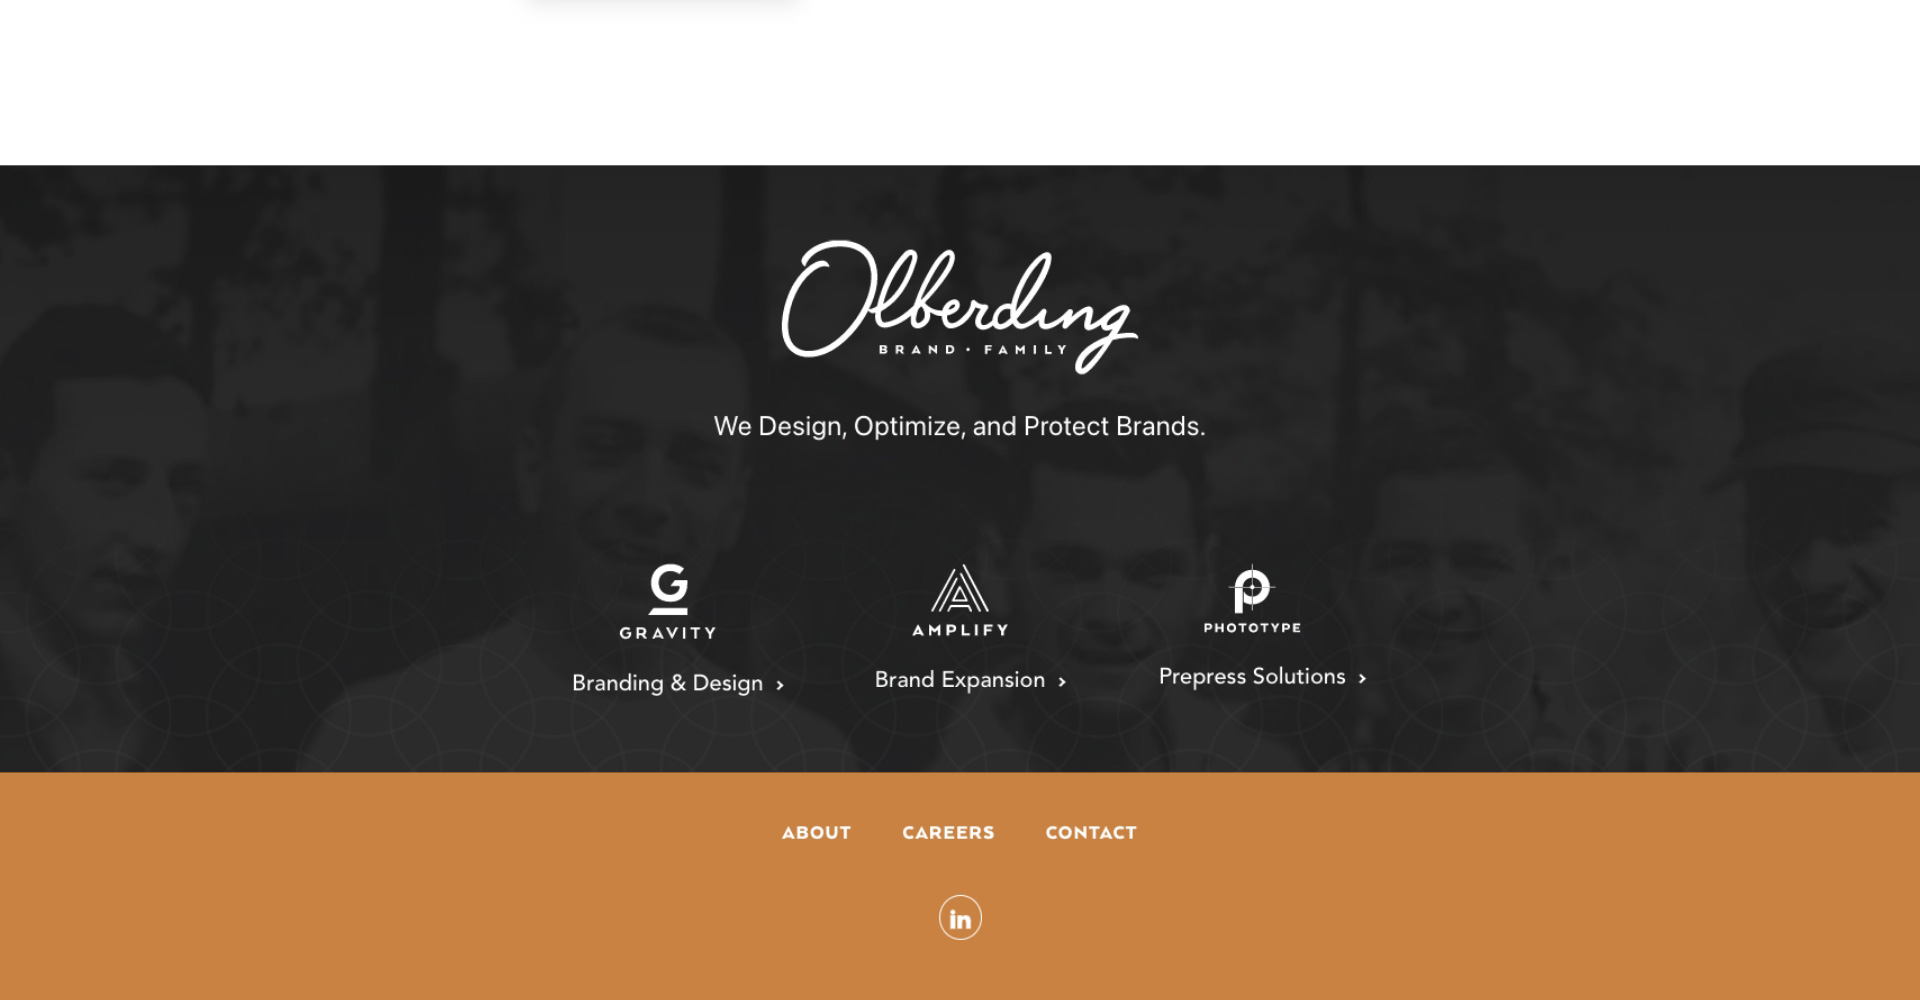 Homepage screenshot of Olberding